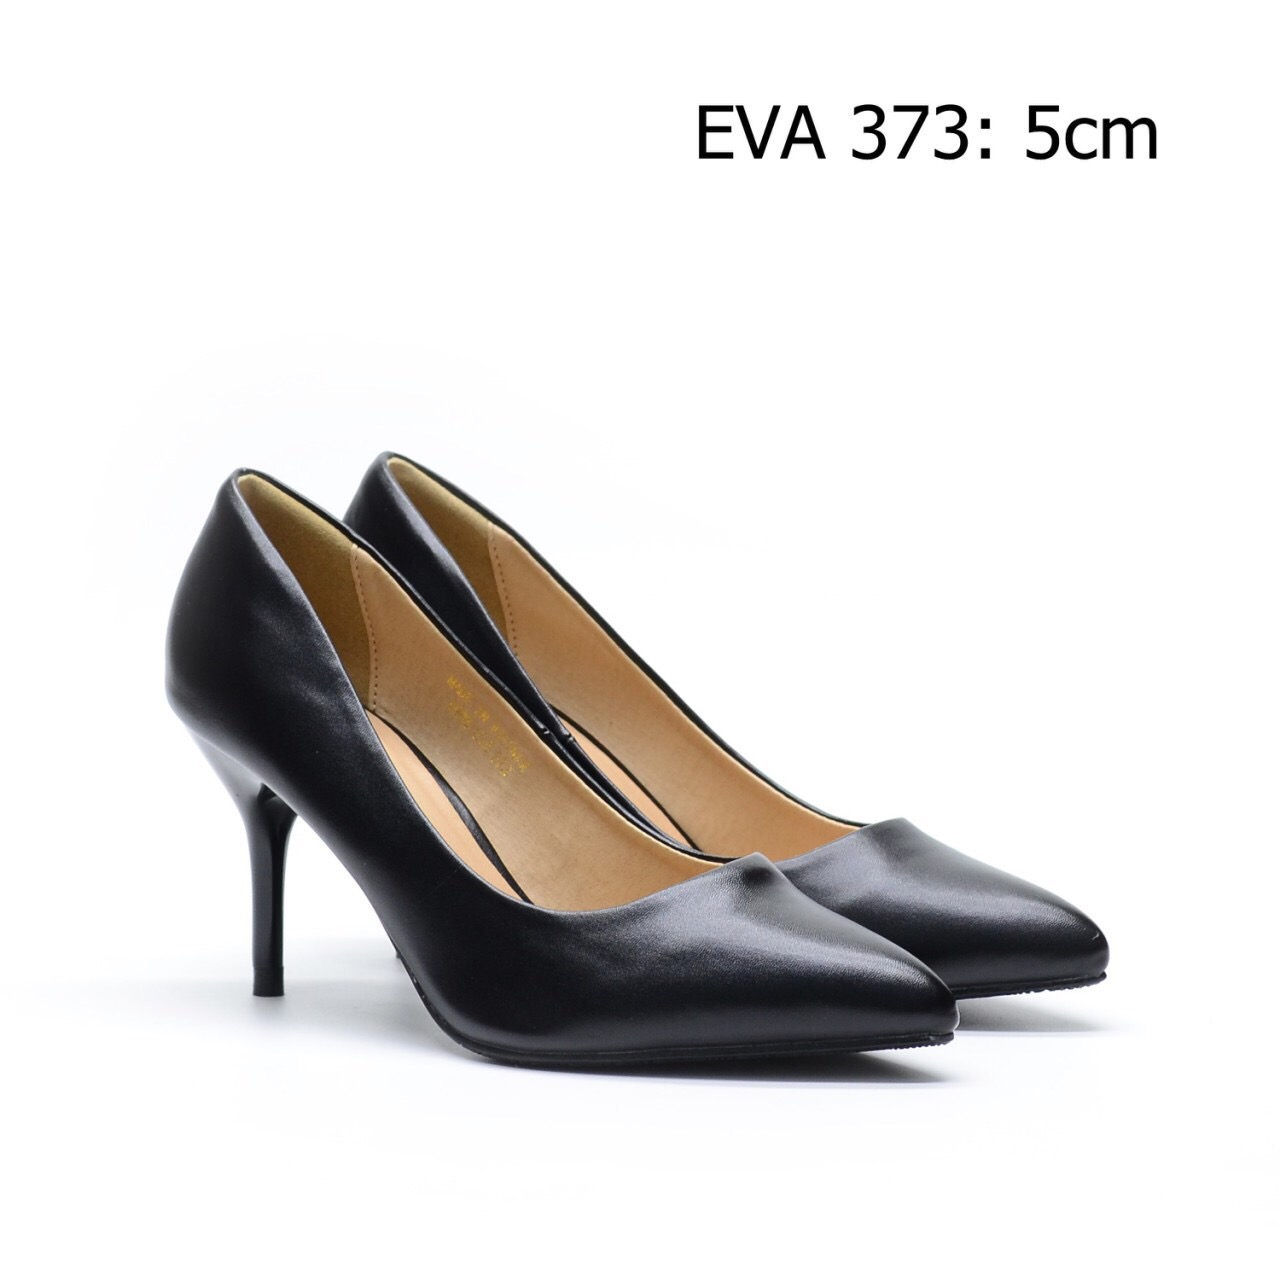 Giày công sở EVA373 cao 5cm kiểu dáng trang nhã, thanh lịch